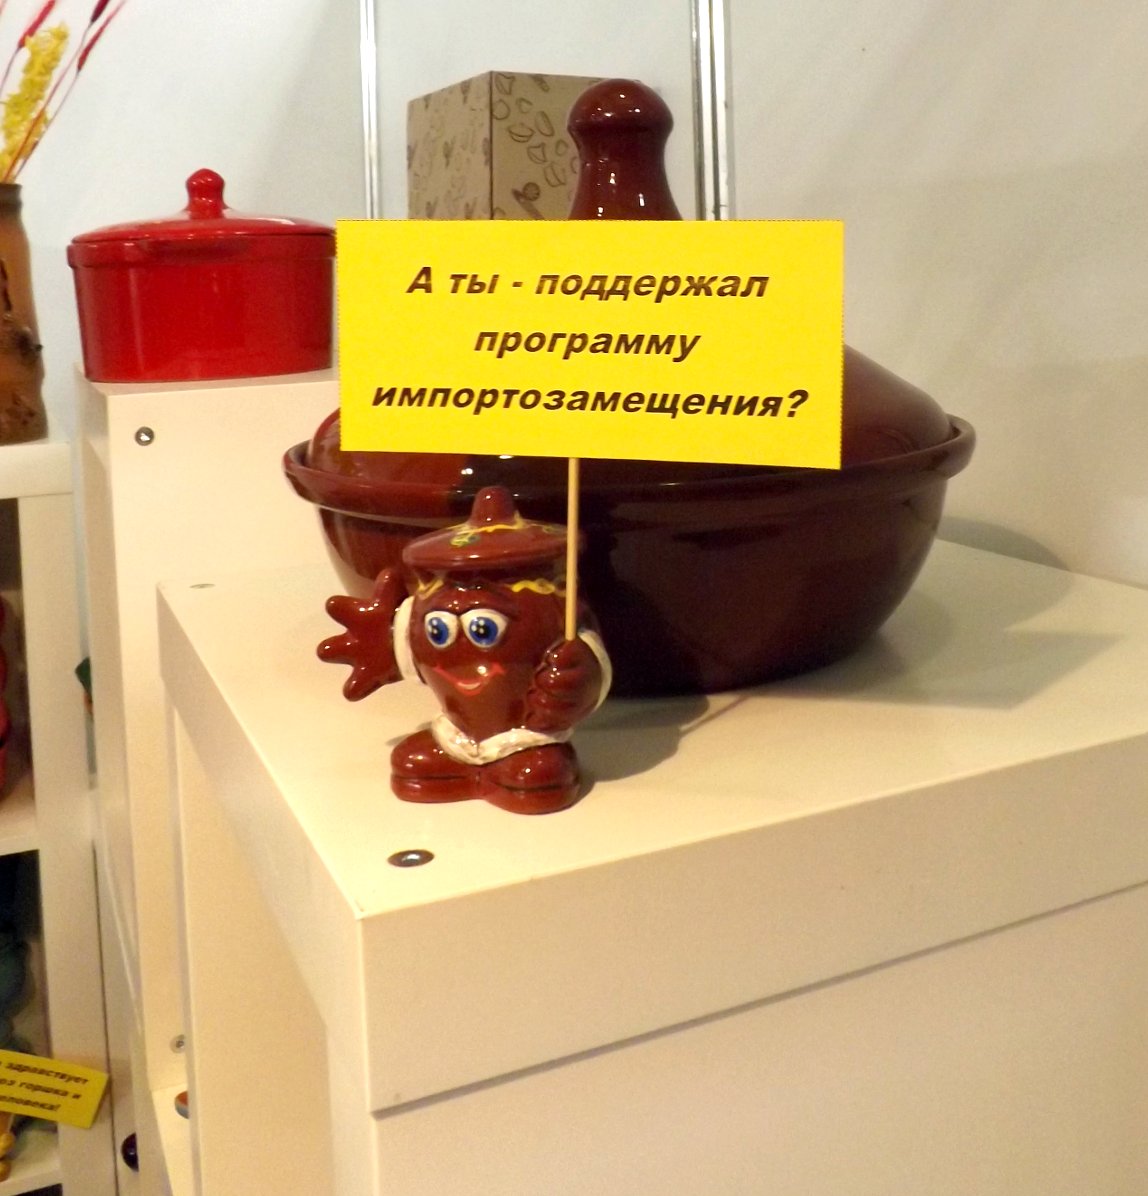 Фигурка керамическая с юмором на тему импортозамещения на выставке HouseHoldExpo 2015 в сентябре